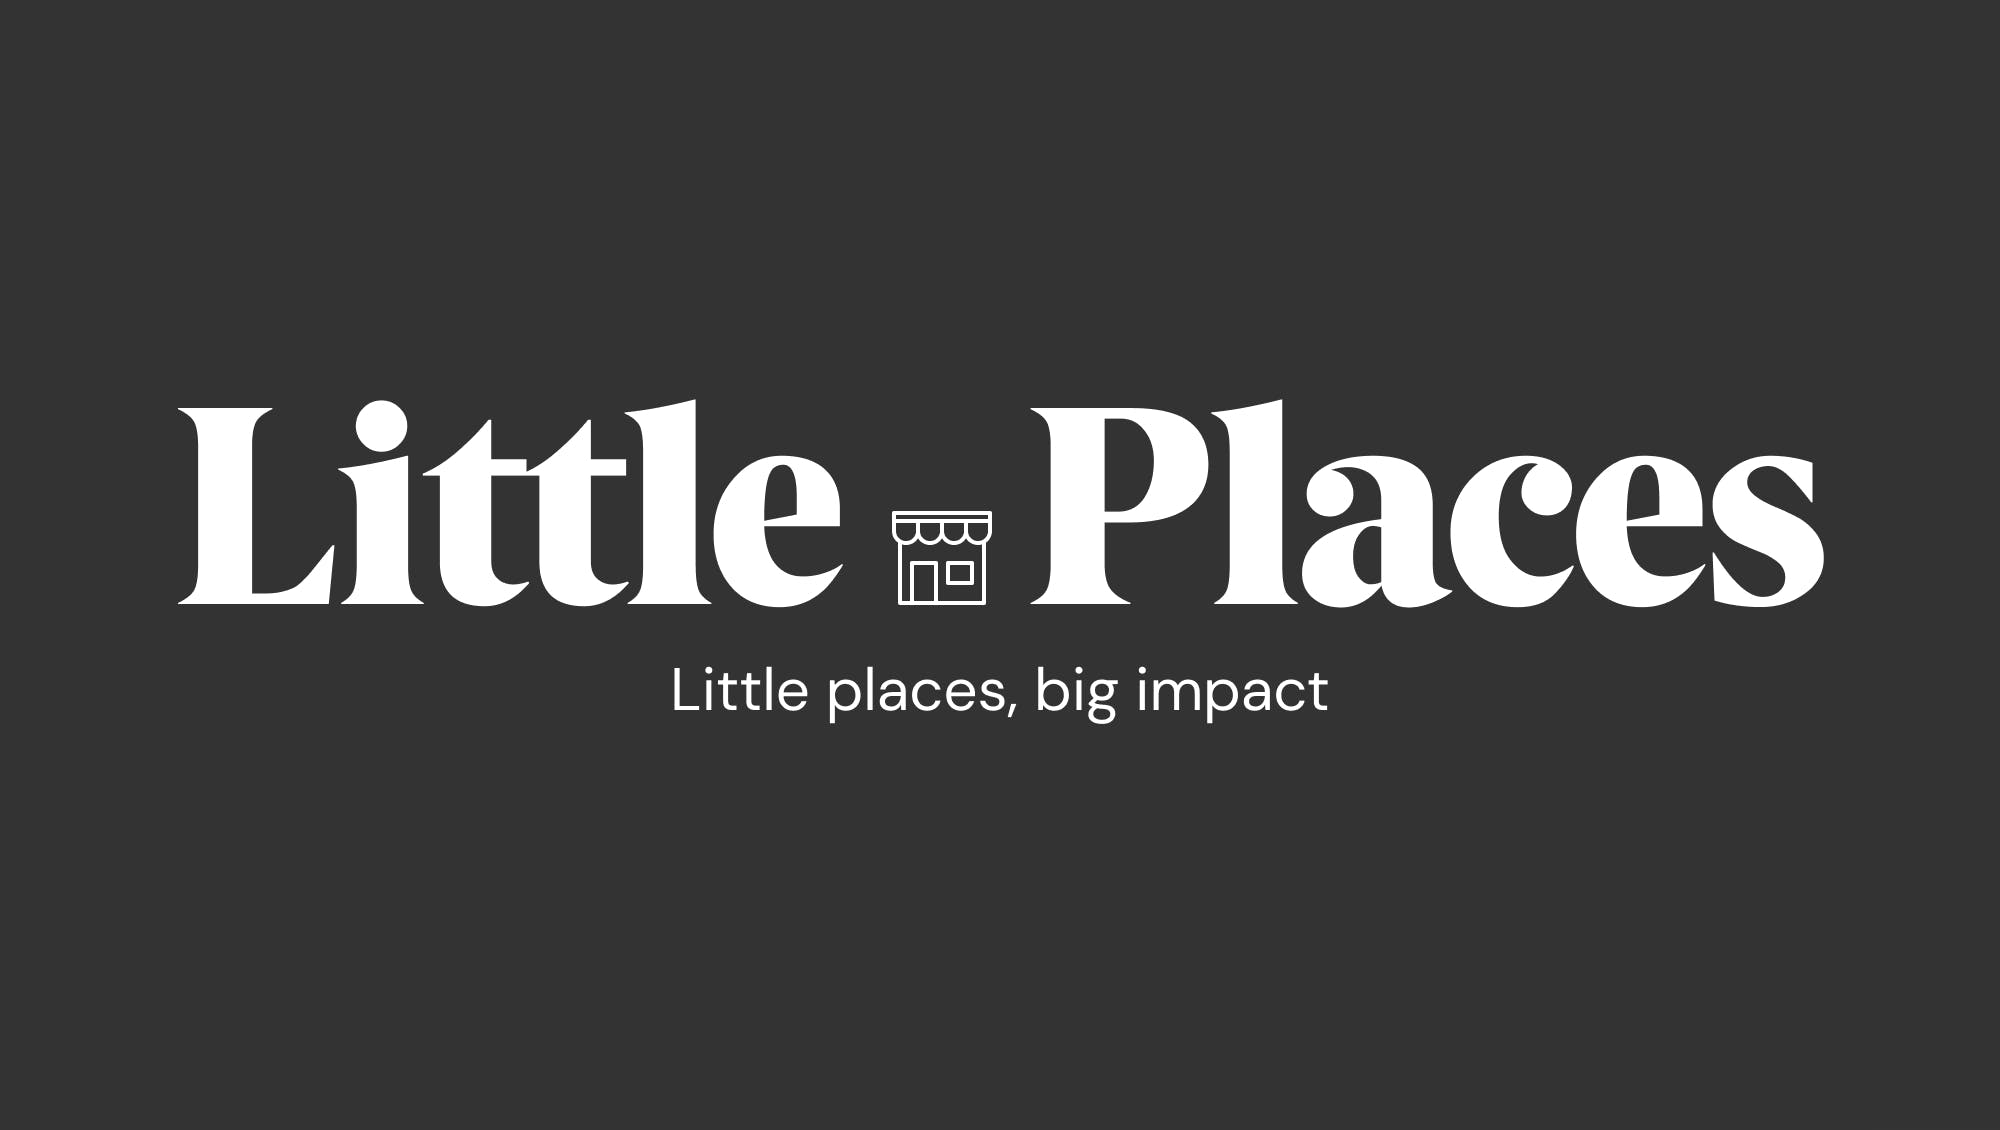 Little Places media 3